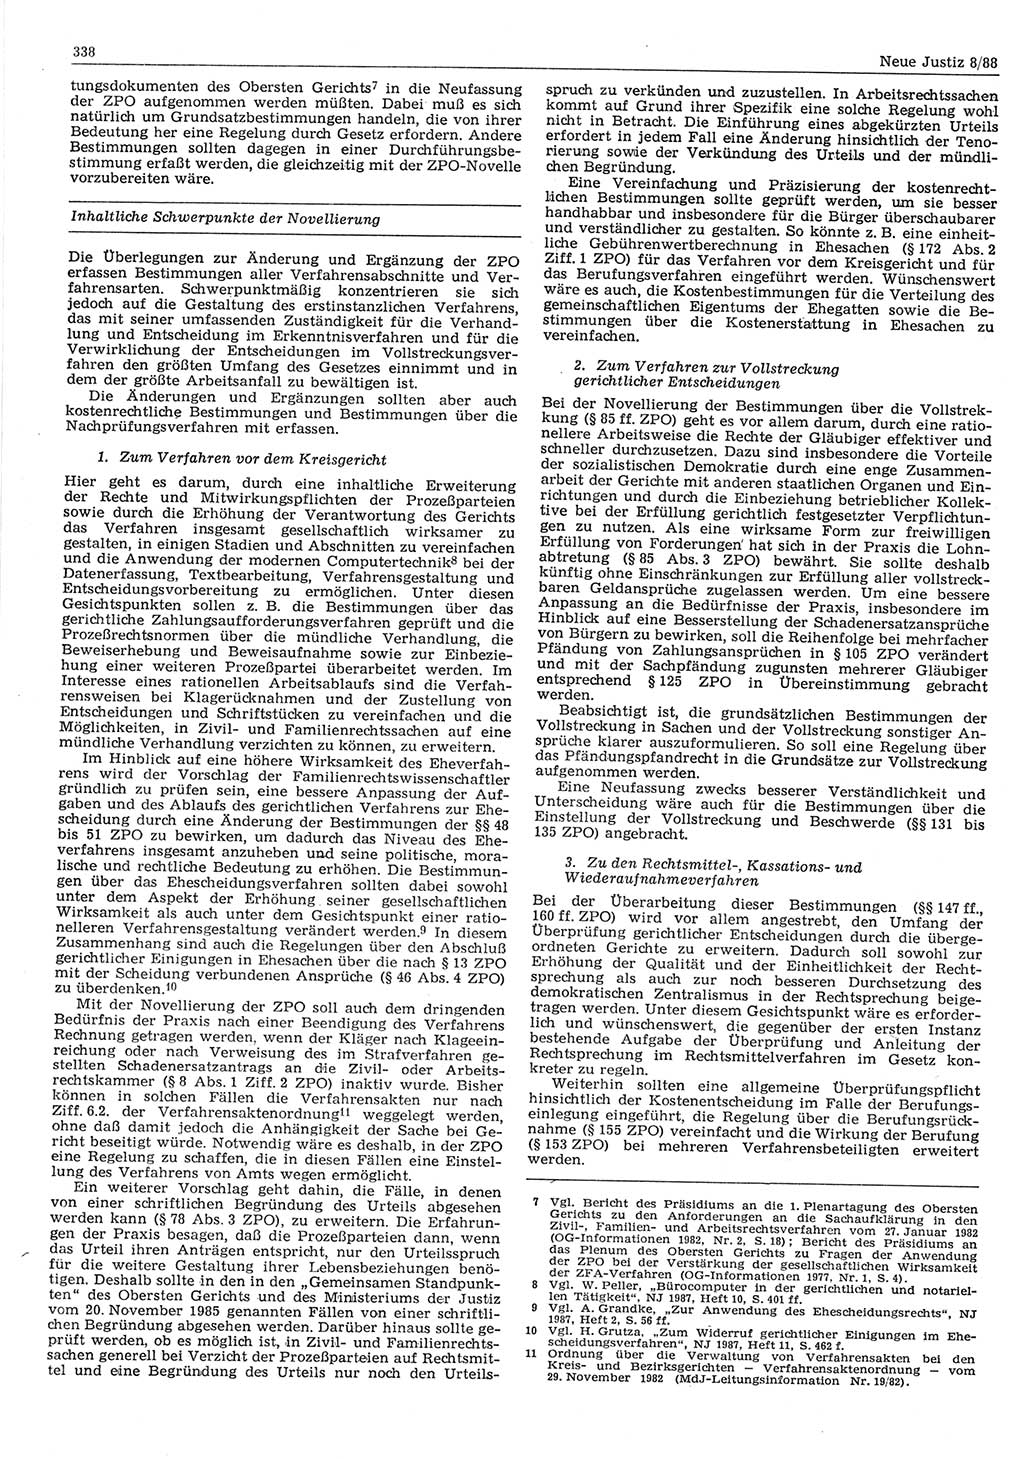 Neue Justiz (NJ), Zeitschrift für sozialistisches Recht und Gesetzlichkeit [Deutsche Demokratische Republik (DDR)], 42. Jahrgang 1988, Seite 338 (NJ DDR 1988, S. 338)